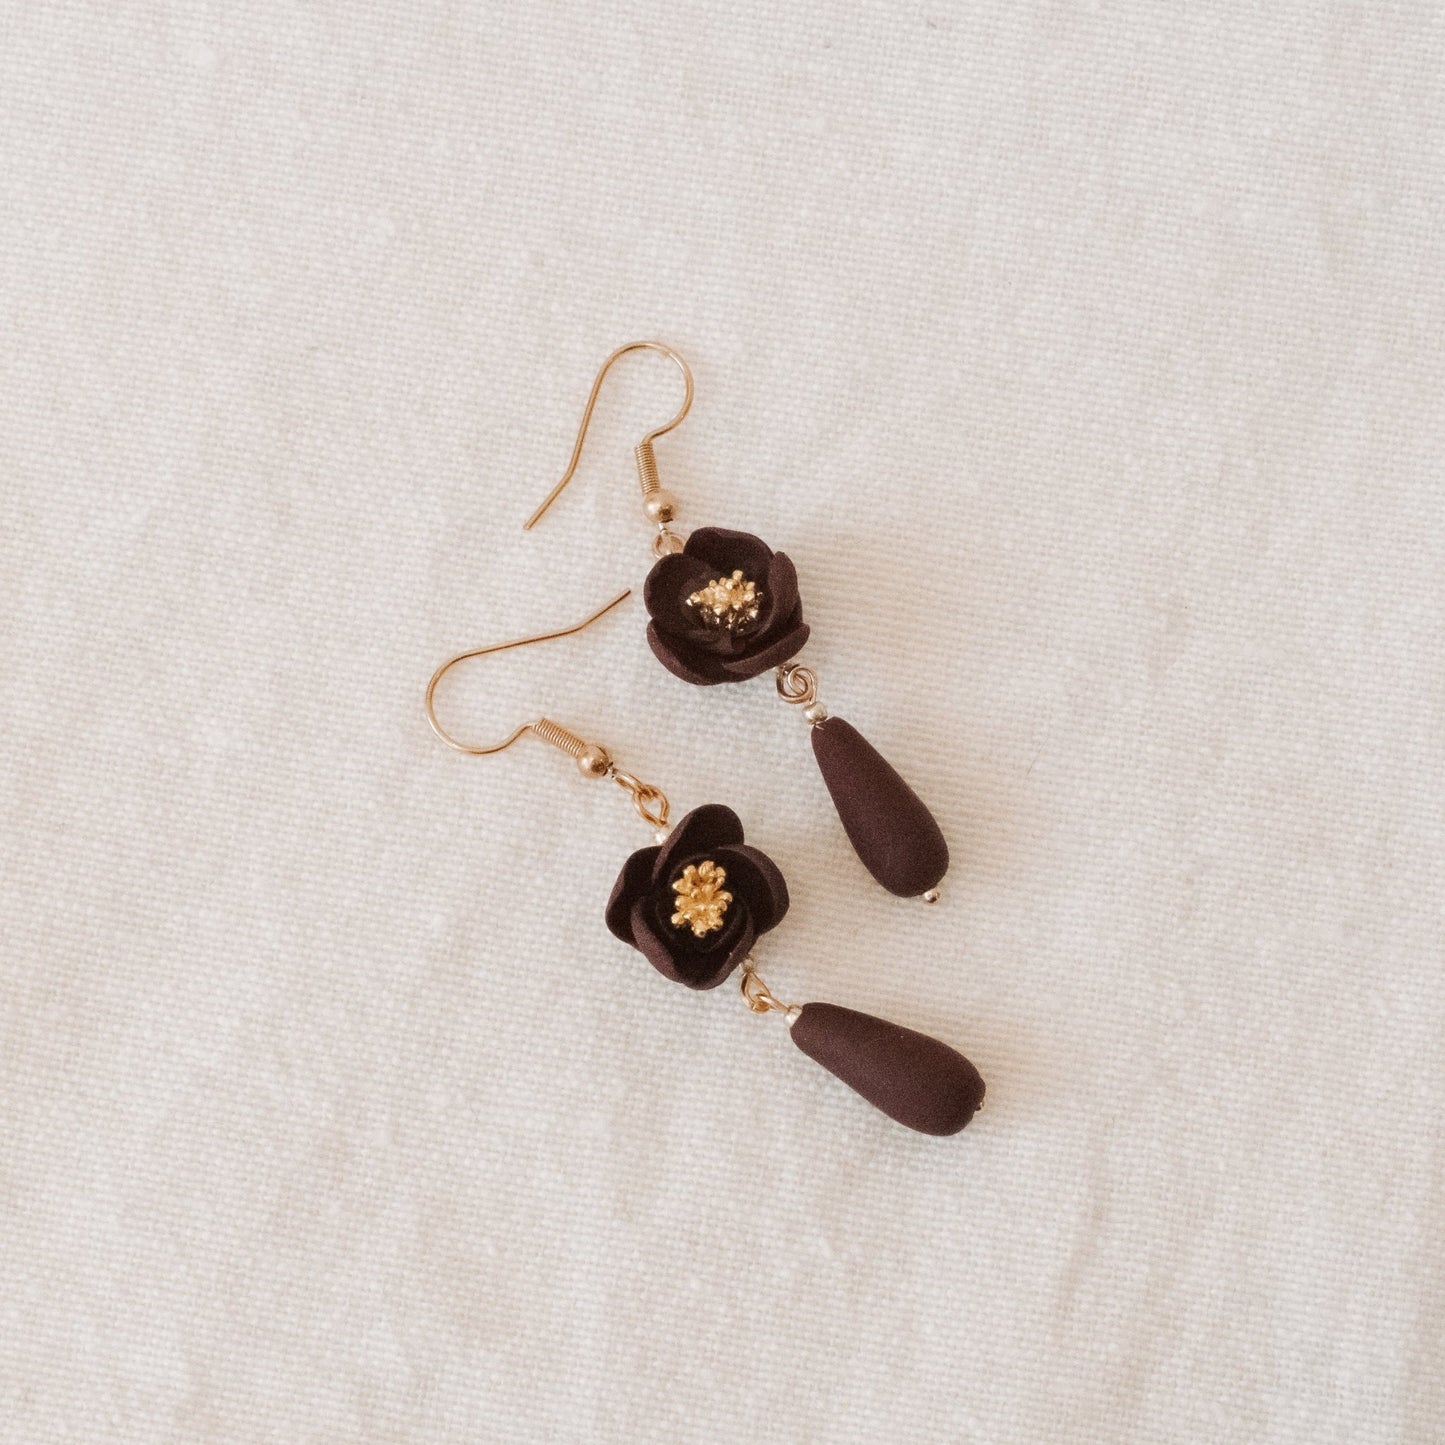 Floral Burgandy Beaded Earrings - Claymore NZ - Earrings